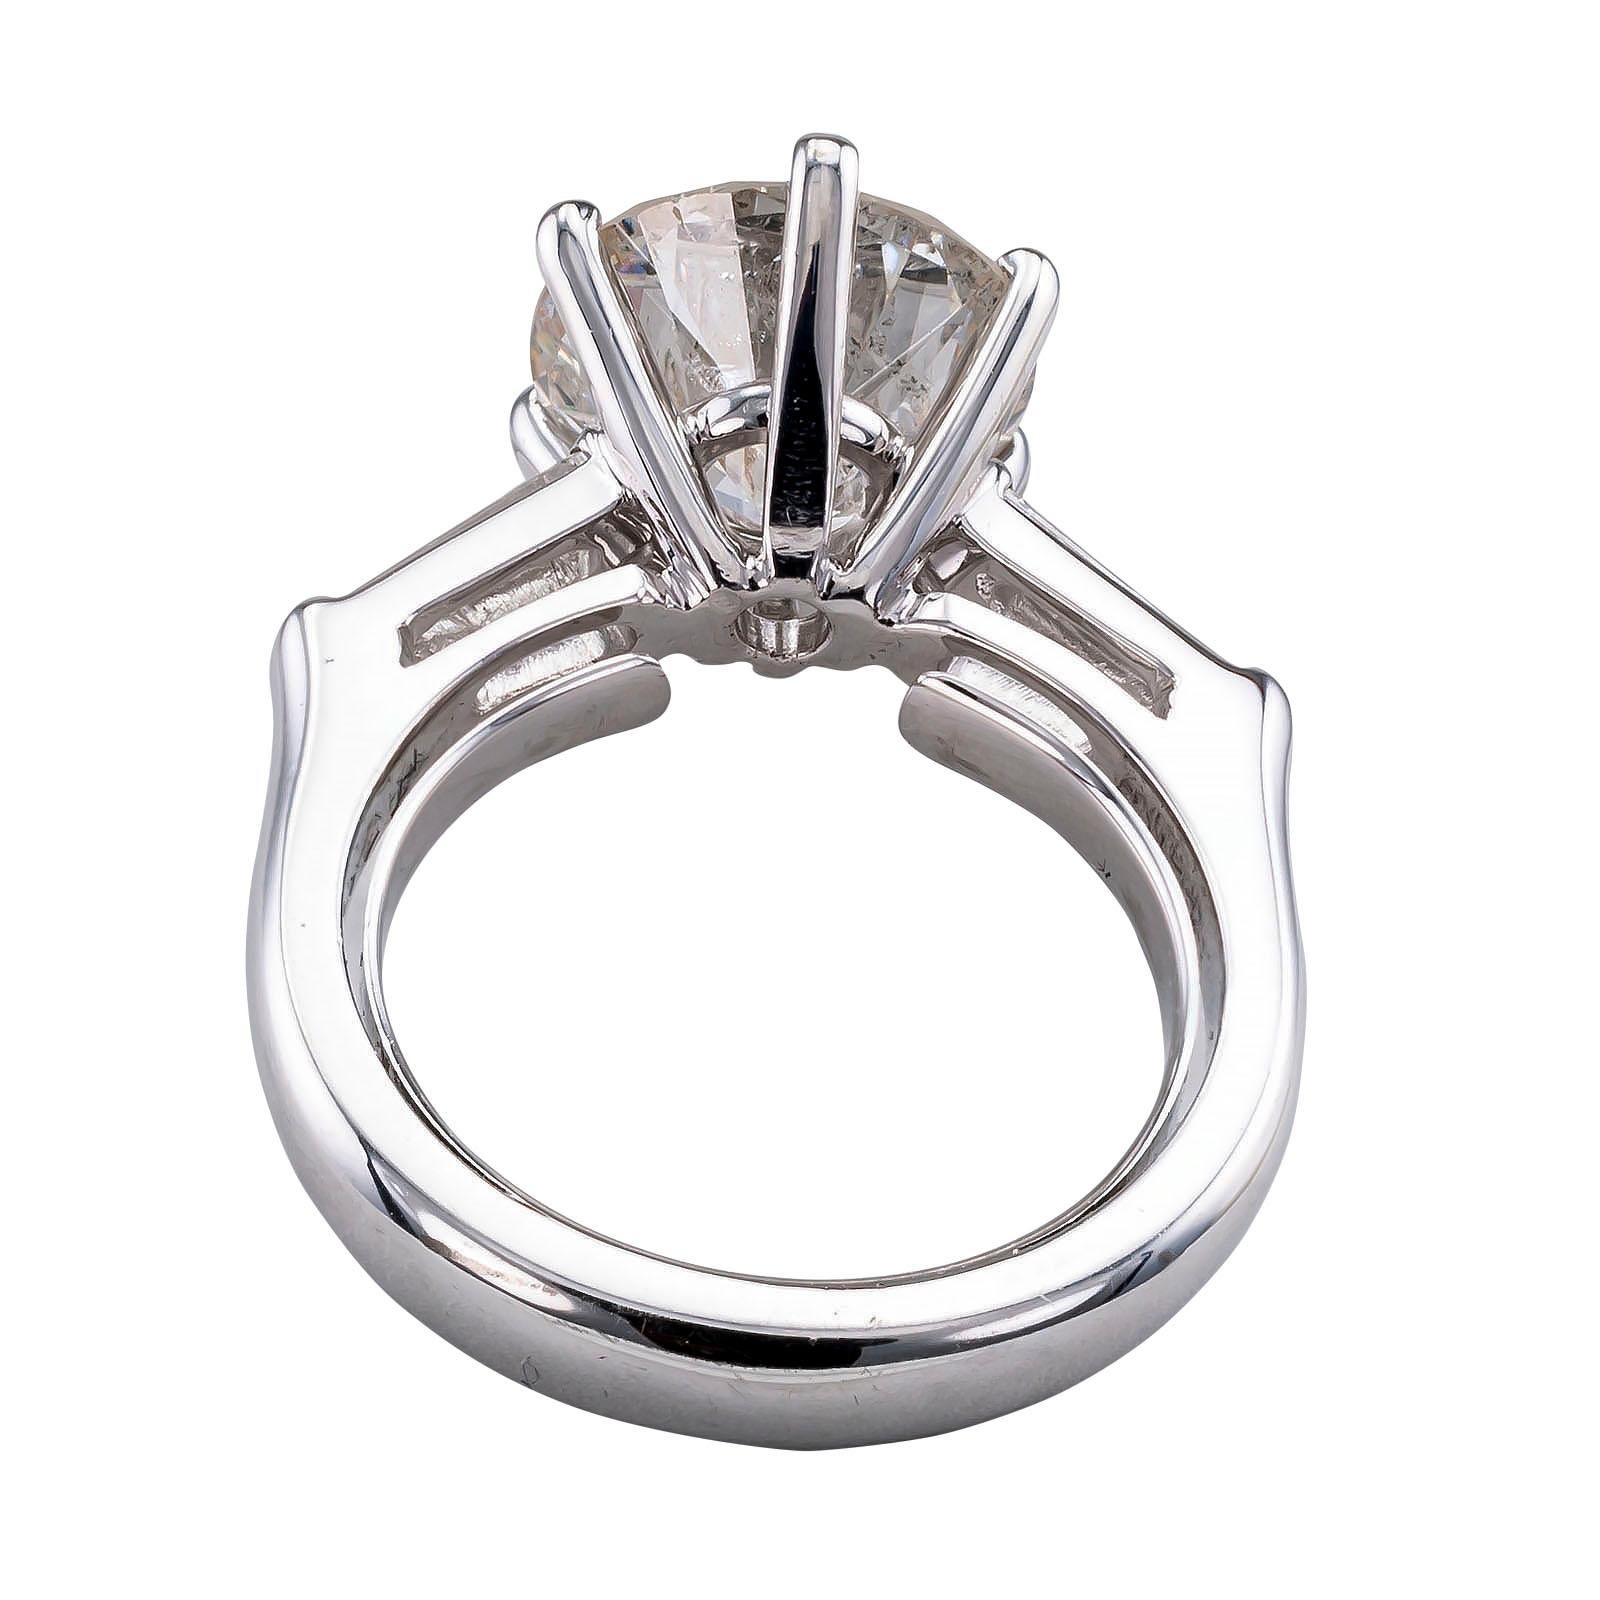 4.43 carat diamond ring price